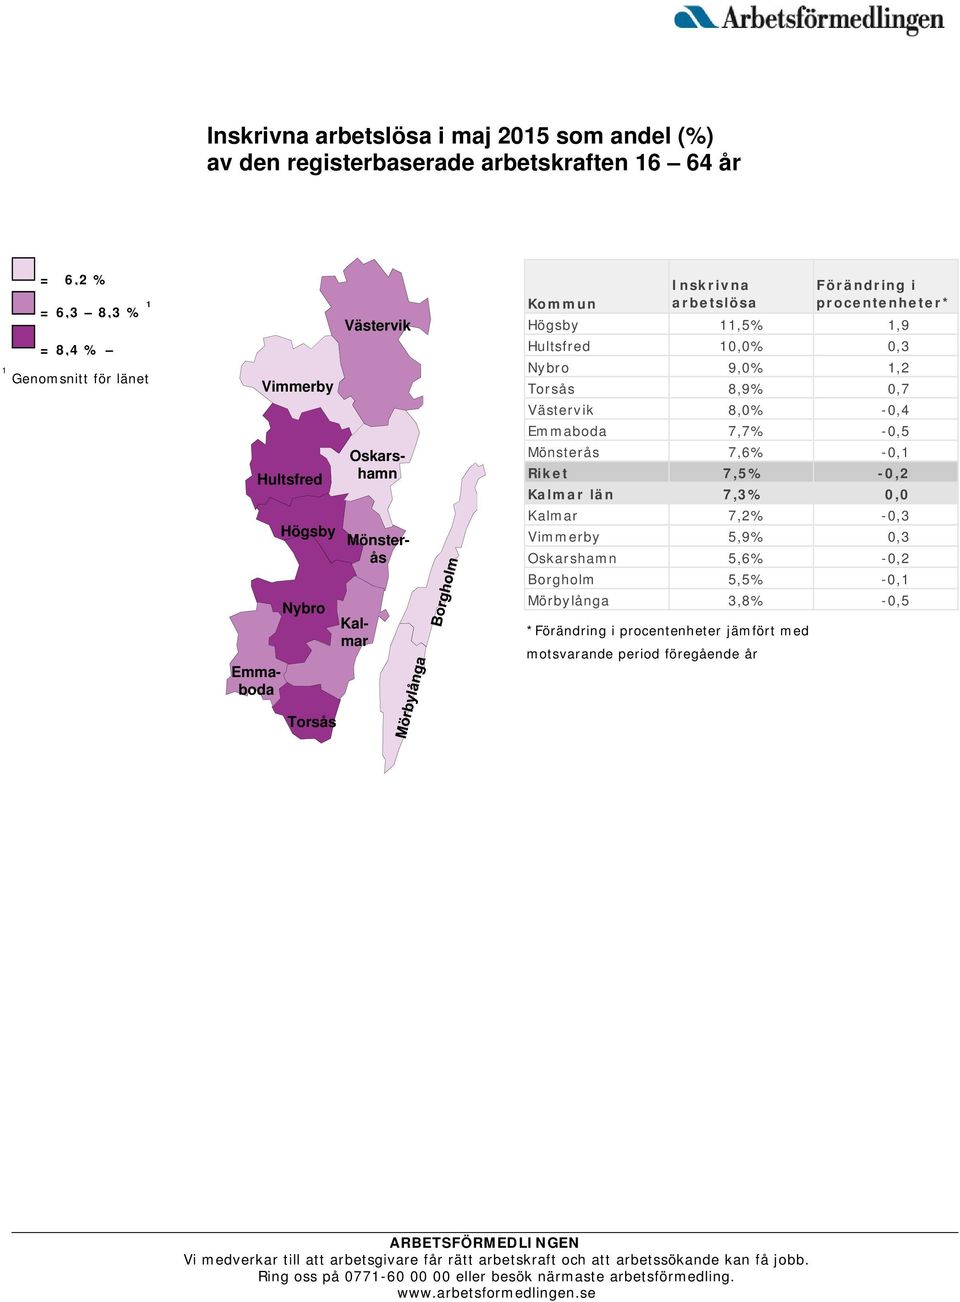 Hultsfred 10,0% 0,3 Nybro 9,0% 1,2 Torsås 8,9% 0,7 Västervik 8,0% -0,4 Emmaboda 7,7% -0,5 Mönsterås 7,6% -0,1 Riket 7,5% -0,2 Kalmar län 7,3% 0,0 Kalmar